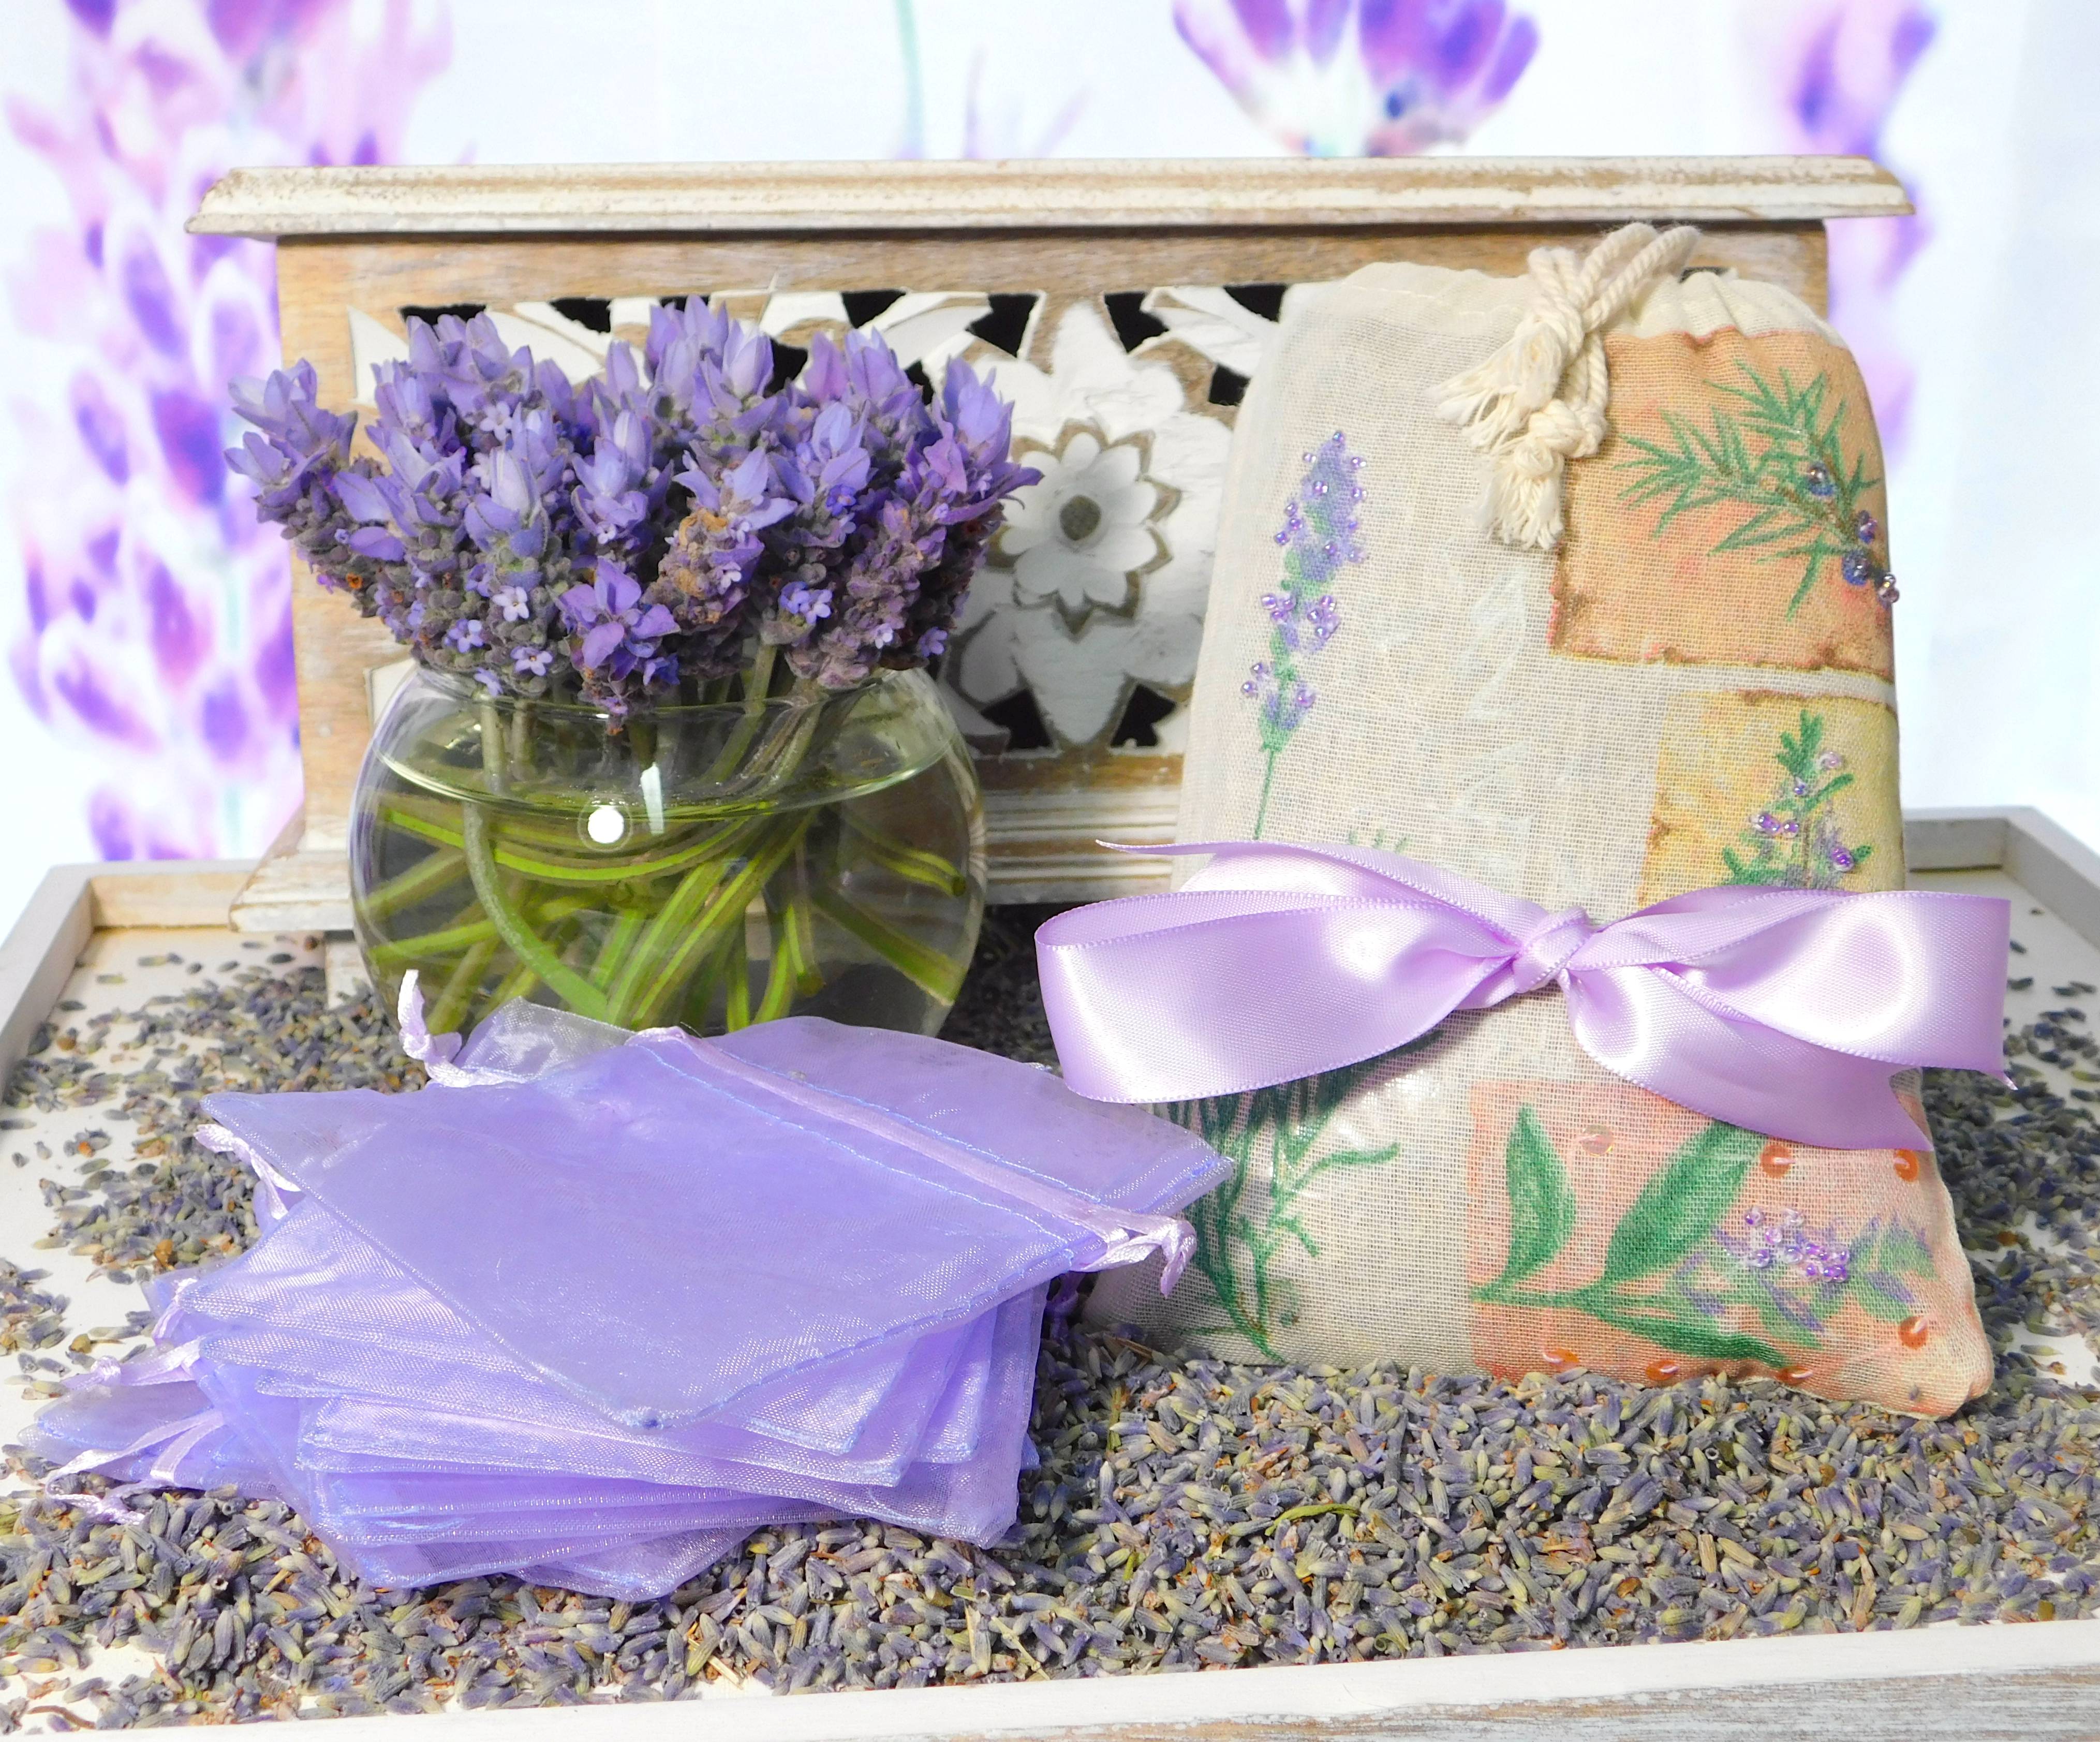 Lavender Sachet Kit for lavender gift giving.